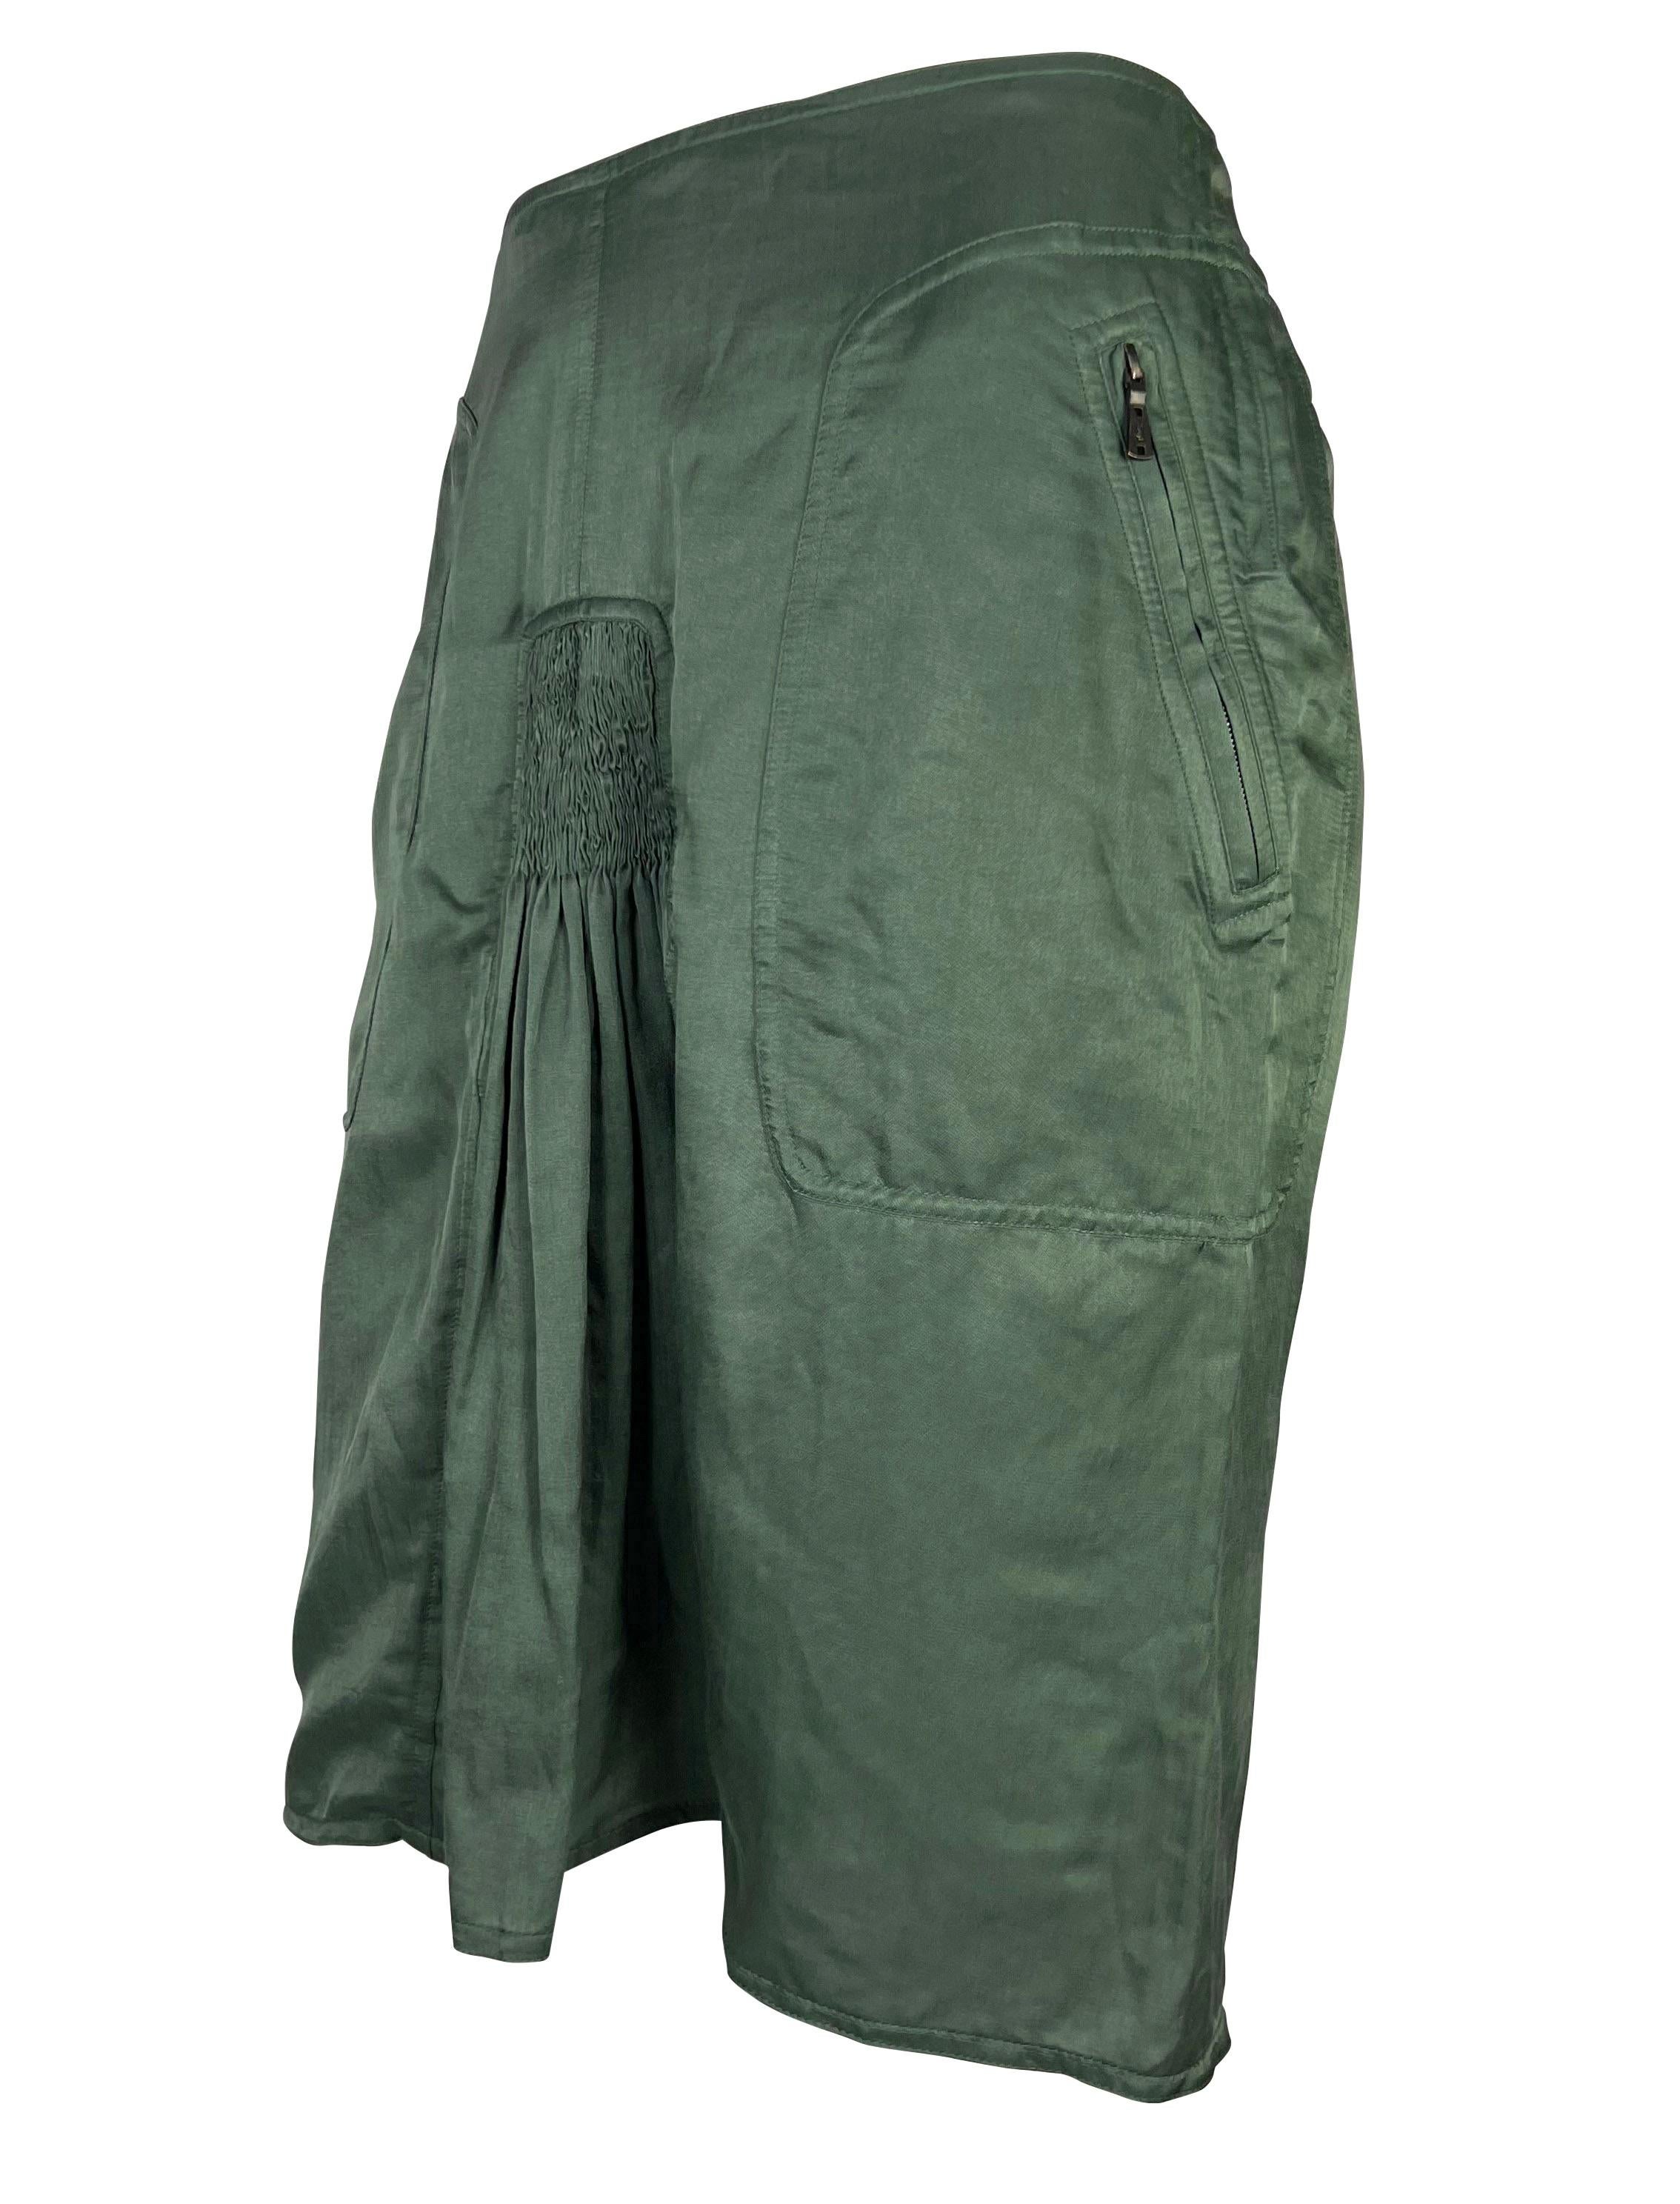 Collectional présente une jupe bodycon sexy conçue par Tom Ford pour la collection printemps/été 2003 d'Yves Saint Laurent Rive Gauche. Le ruchage suggestif reflète l'accent mis par la saison sur la mise en valeur des formes féminines. Les poches